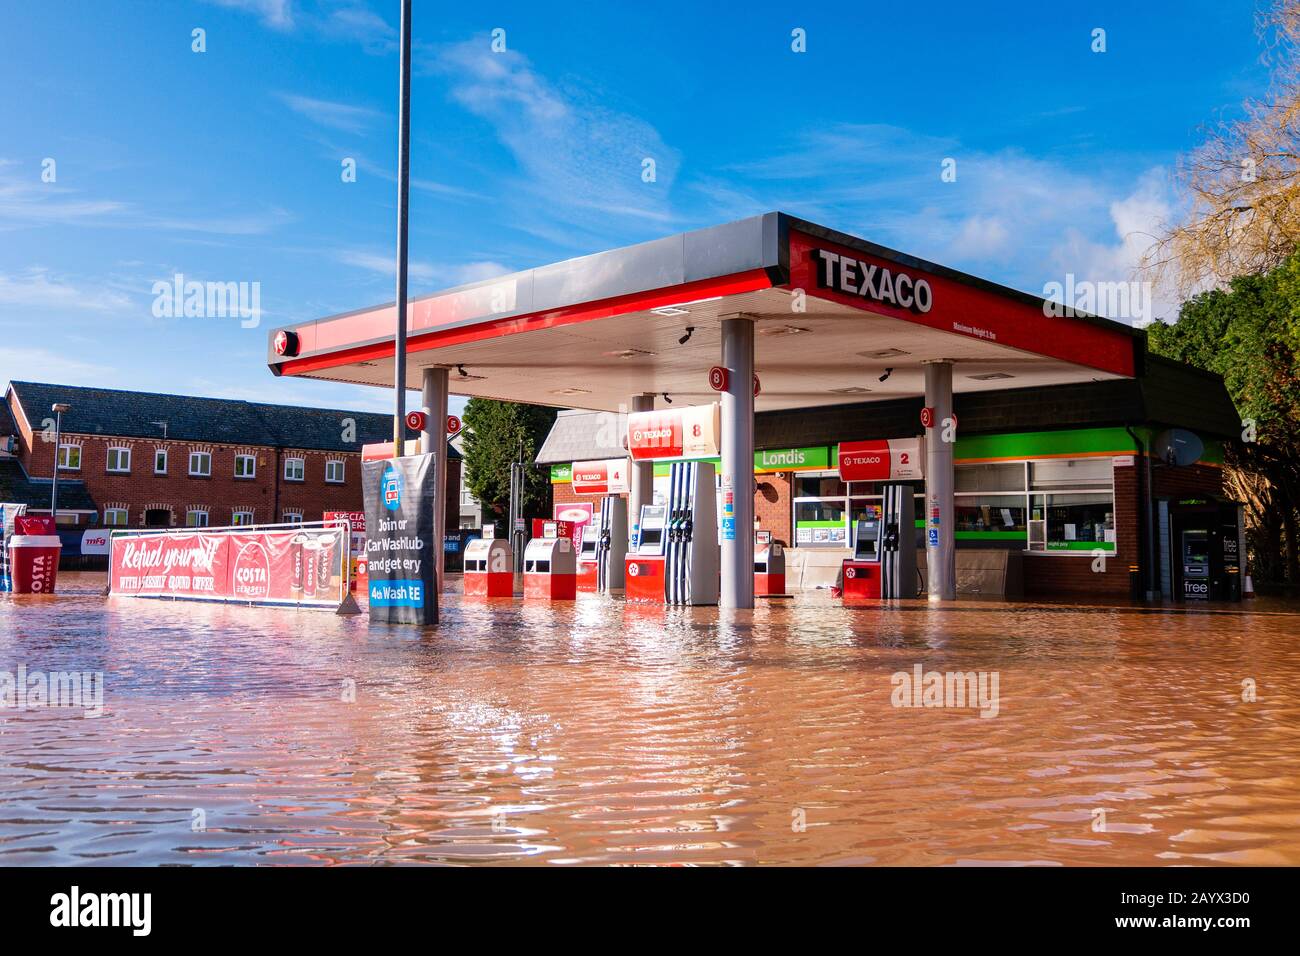 Tempête Dennis inondation à Hereford, février 2020. Station-service piste sous-marine complètement inondée en raison des conditions météorologiques extrêmes, Royaume-Uni. Banque D'Images